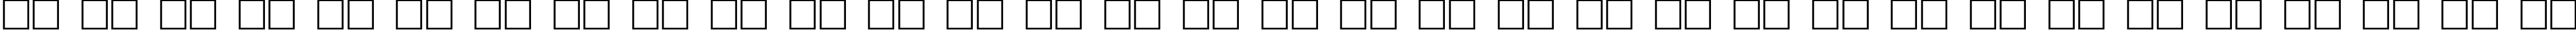 Пример написания русского алфавита шрифтом Klingon Regular